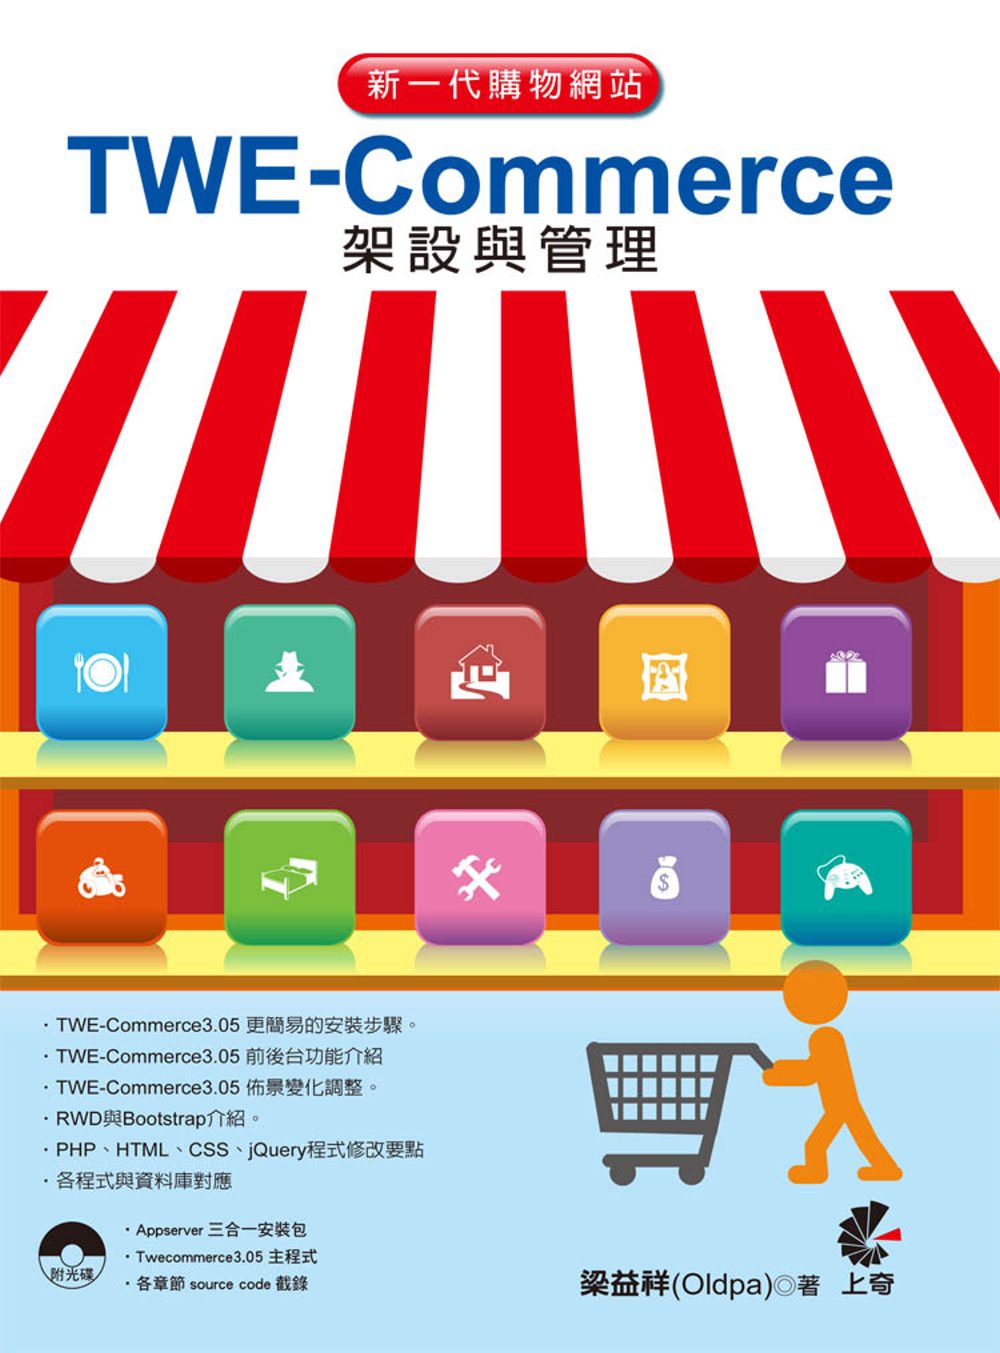 新一代購物網站TWE-Commerce架設與管理